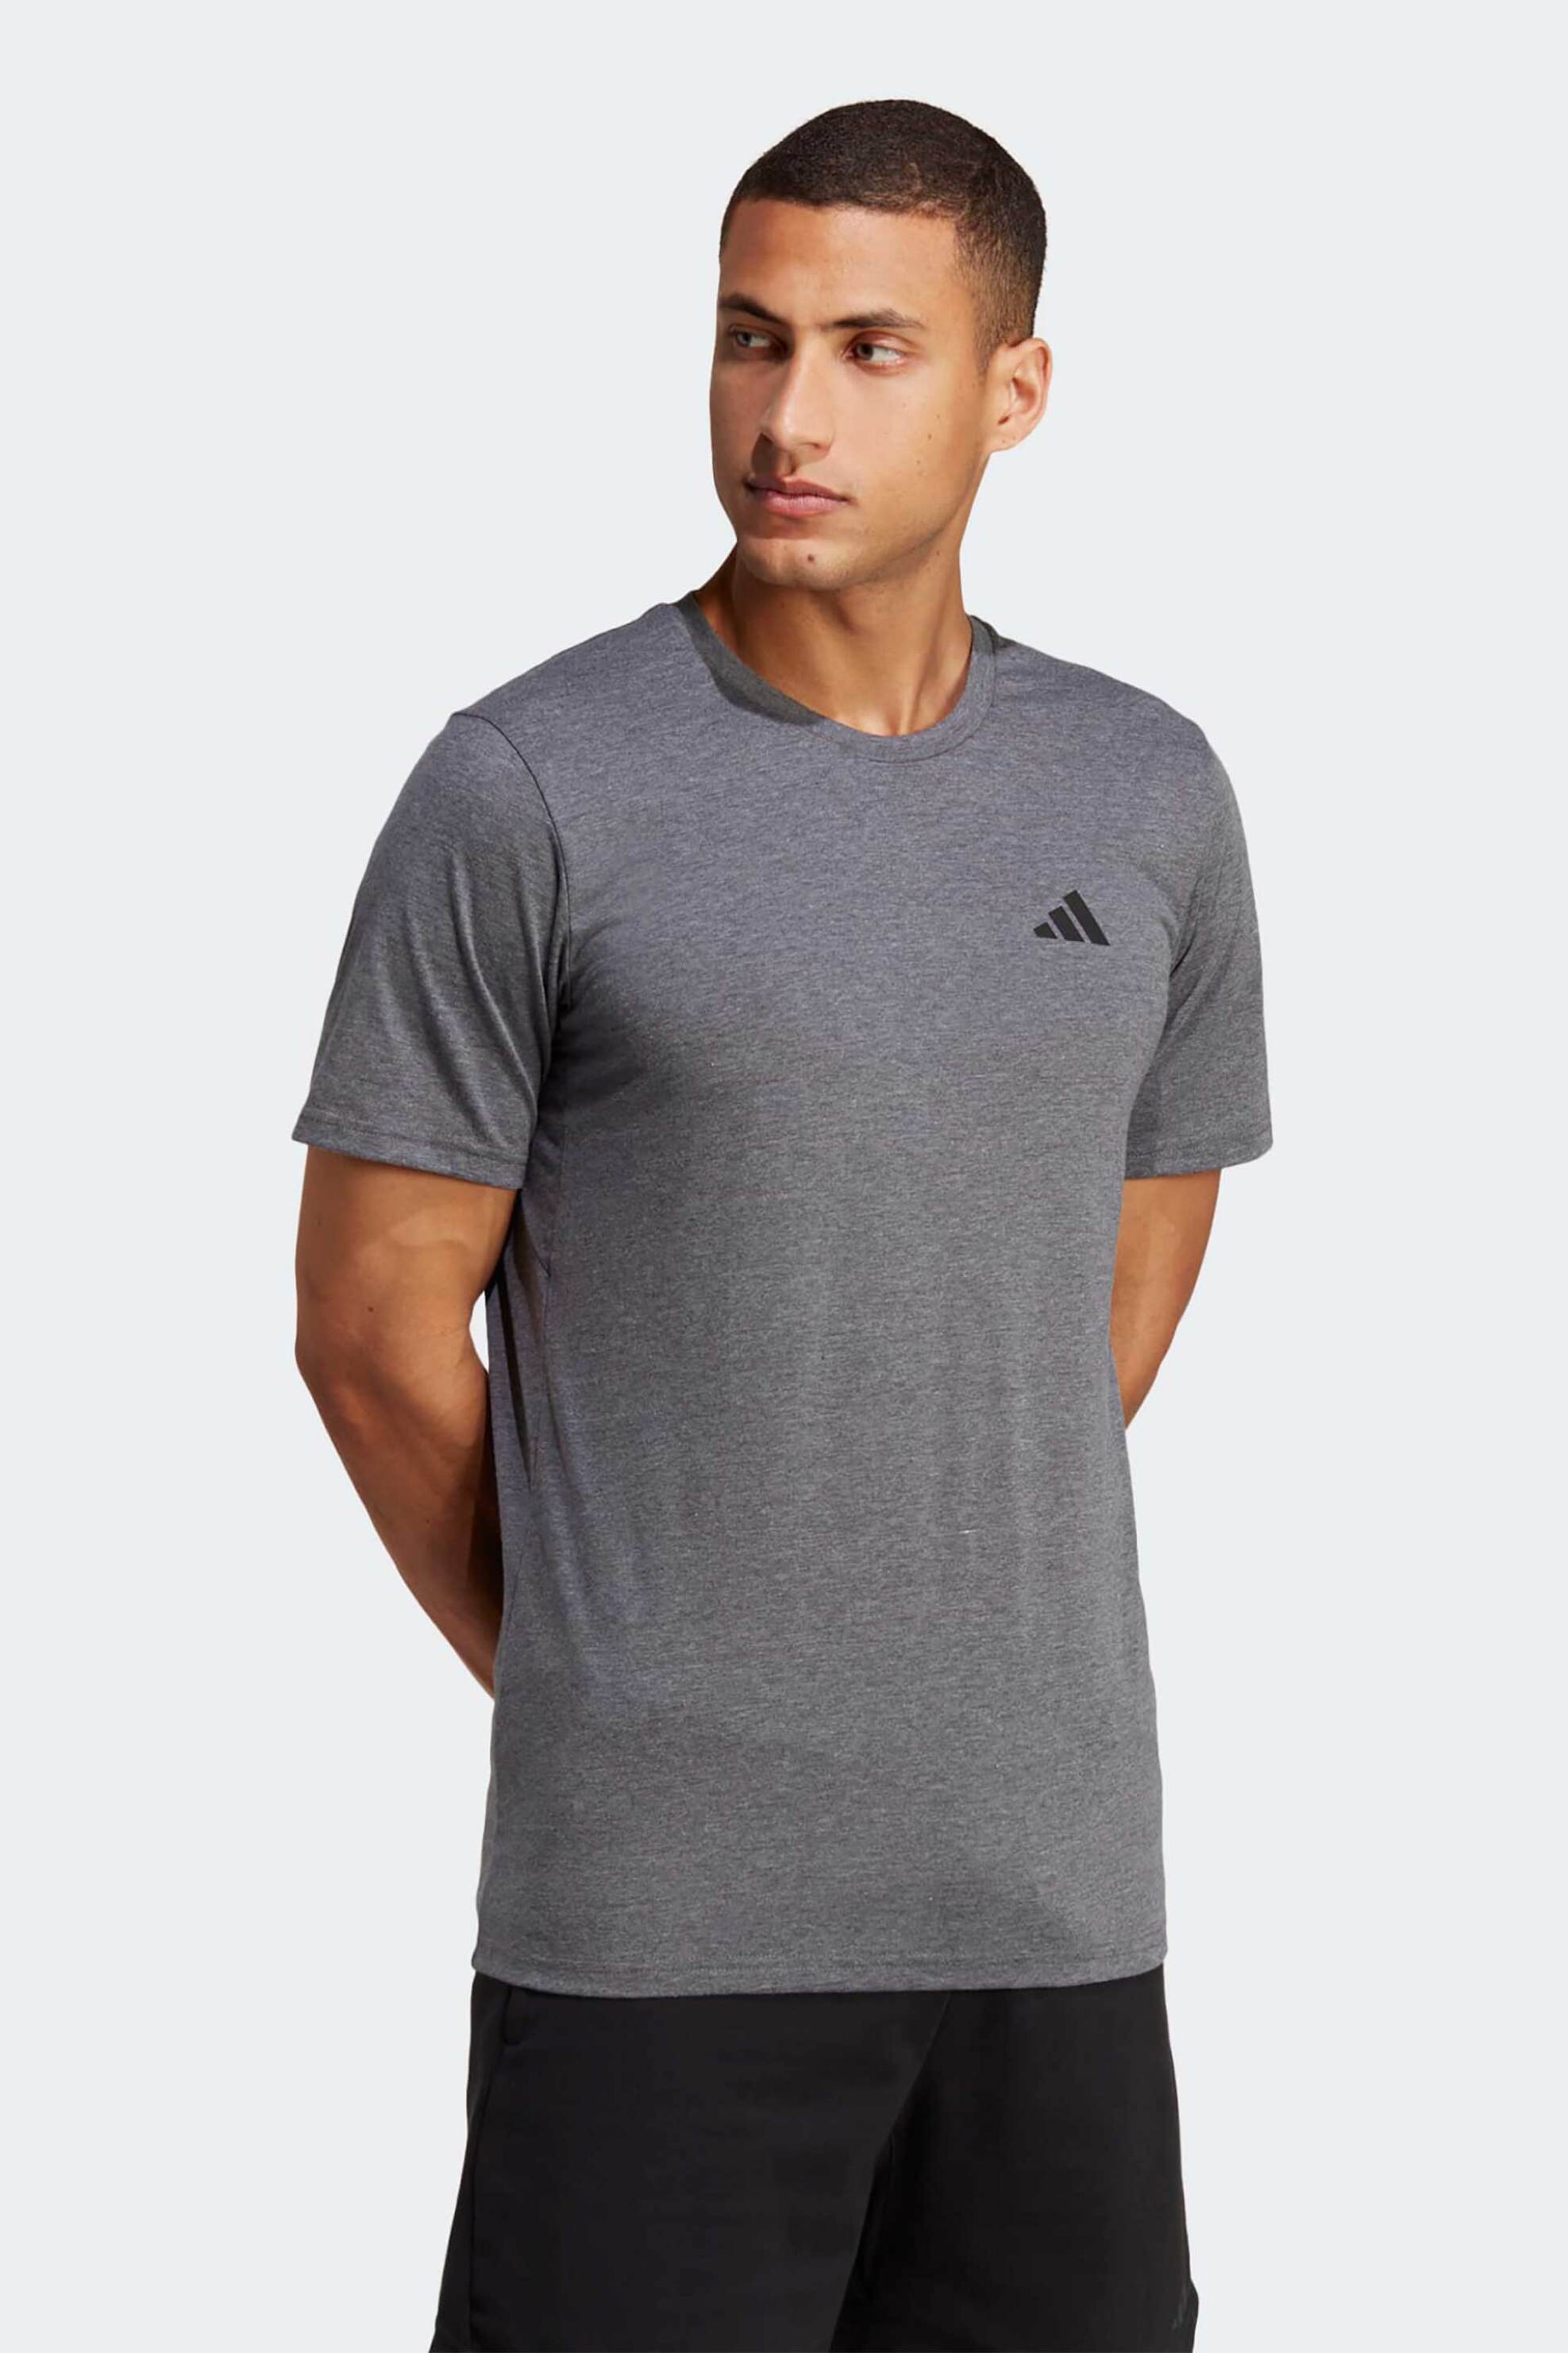 Ανδρική Μόδα > Ανδρικά Αθλητικά > Ανδρικά Αθλητικά Ρούχα > Αθλητικές Μπλούζες > Ανδρικά Αθλητικά T-Shirts Adidas ανδρικό T-shirt μονόχρωμο με logo print Regular Fit "Train Essentials Feelready" - IC7444 Γκρι